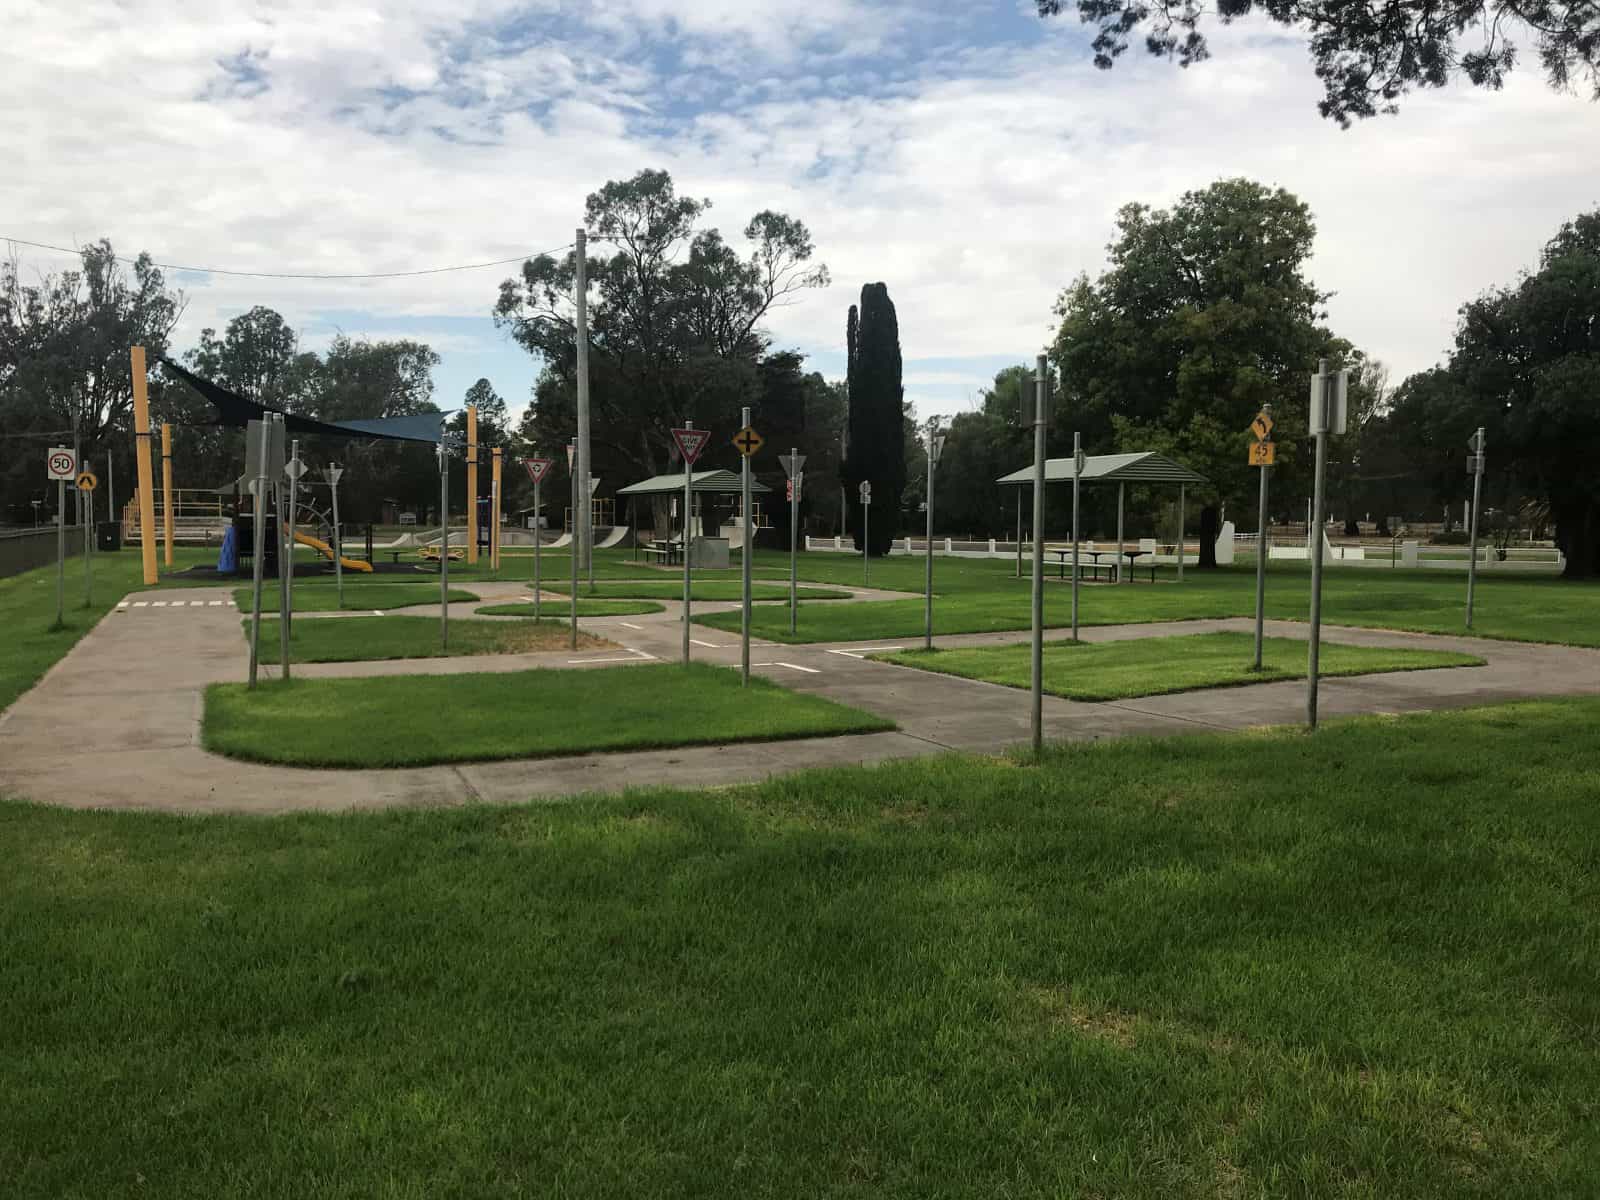 Park, bikes, playground